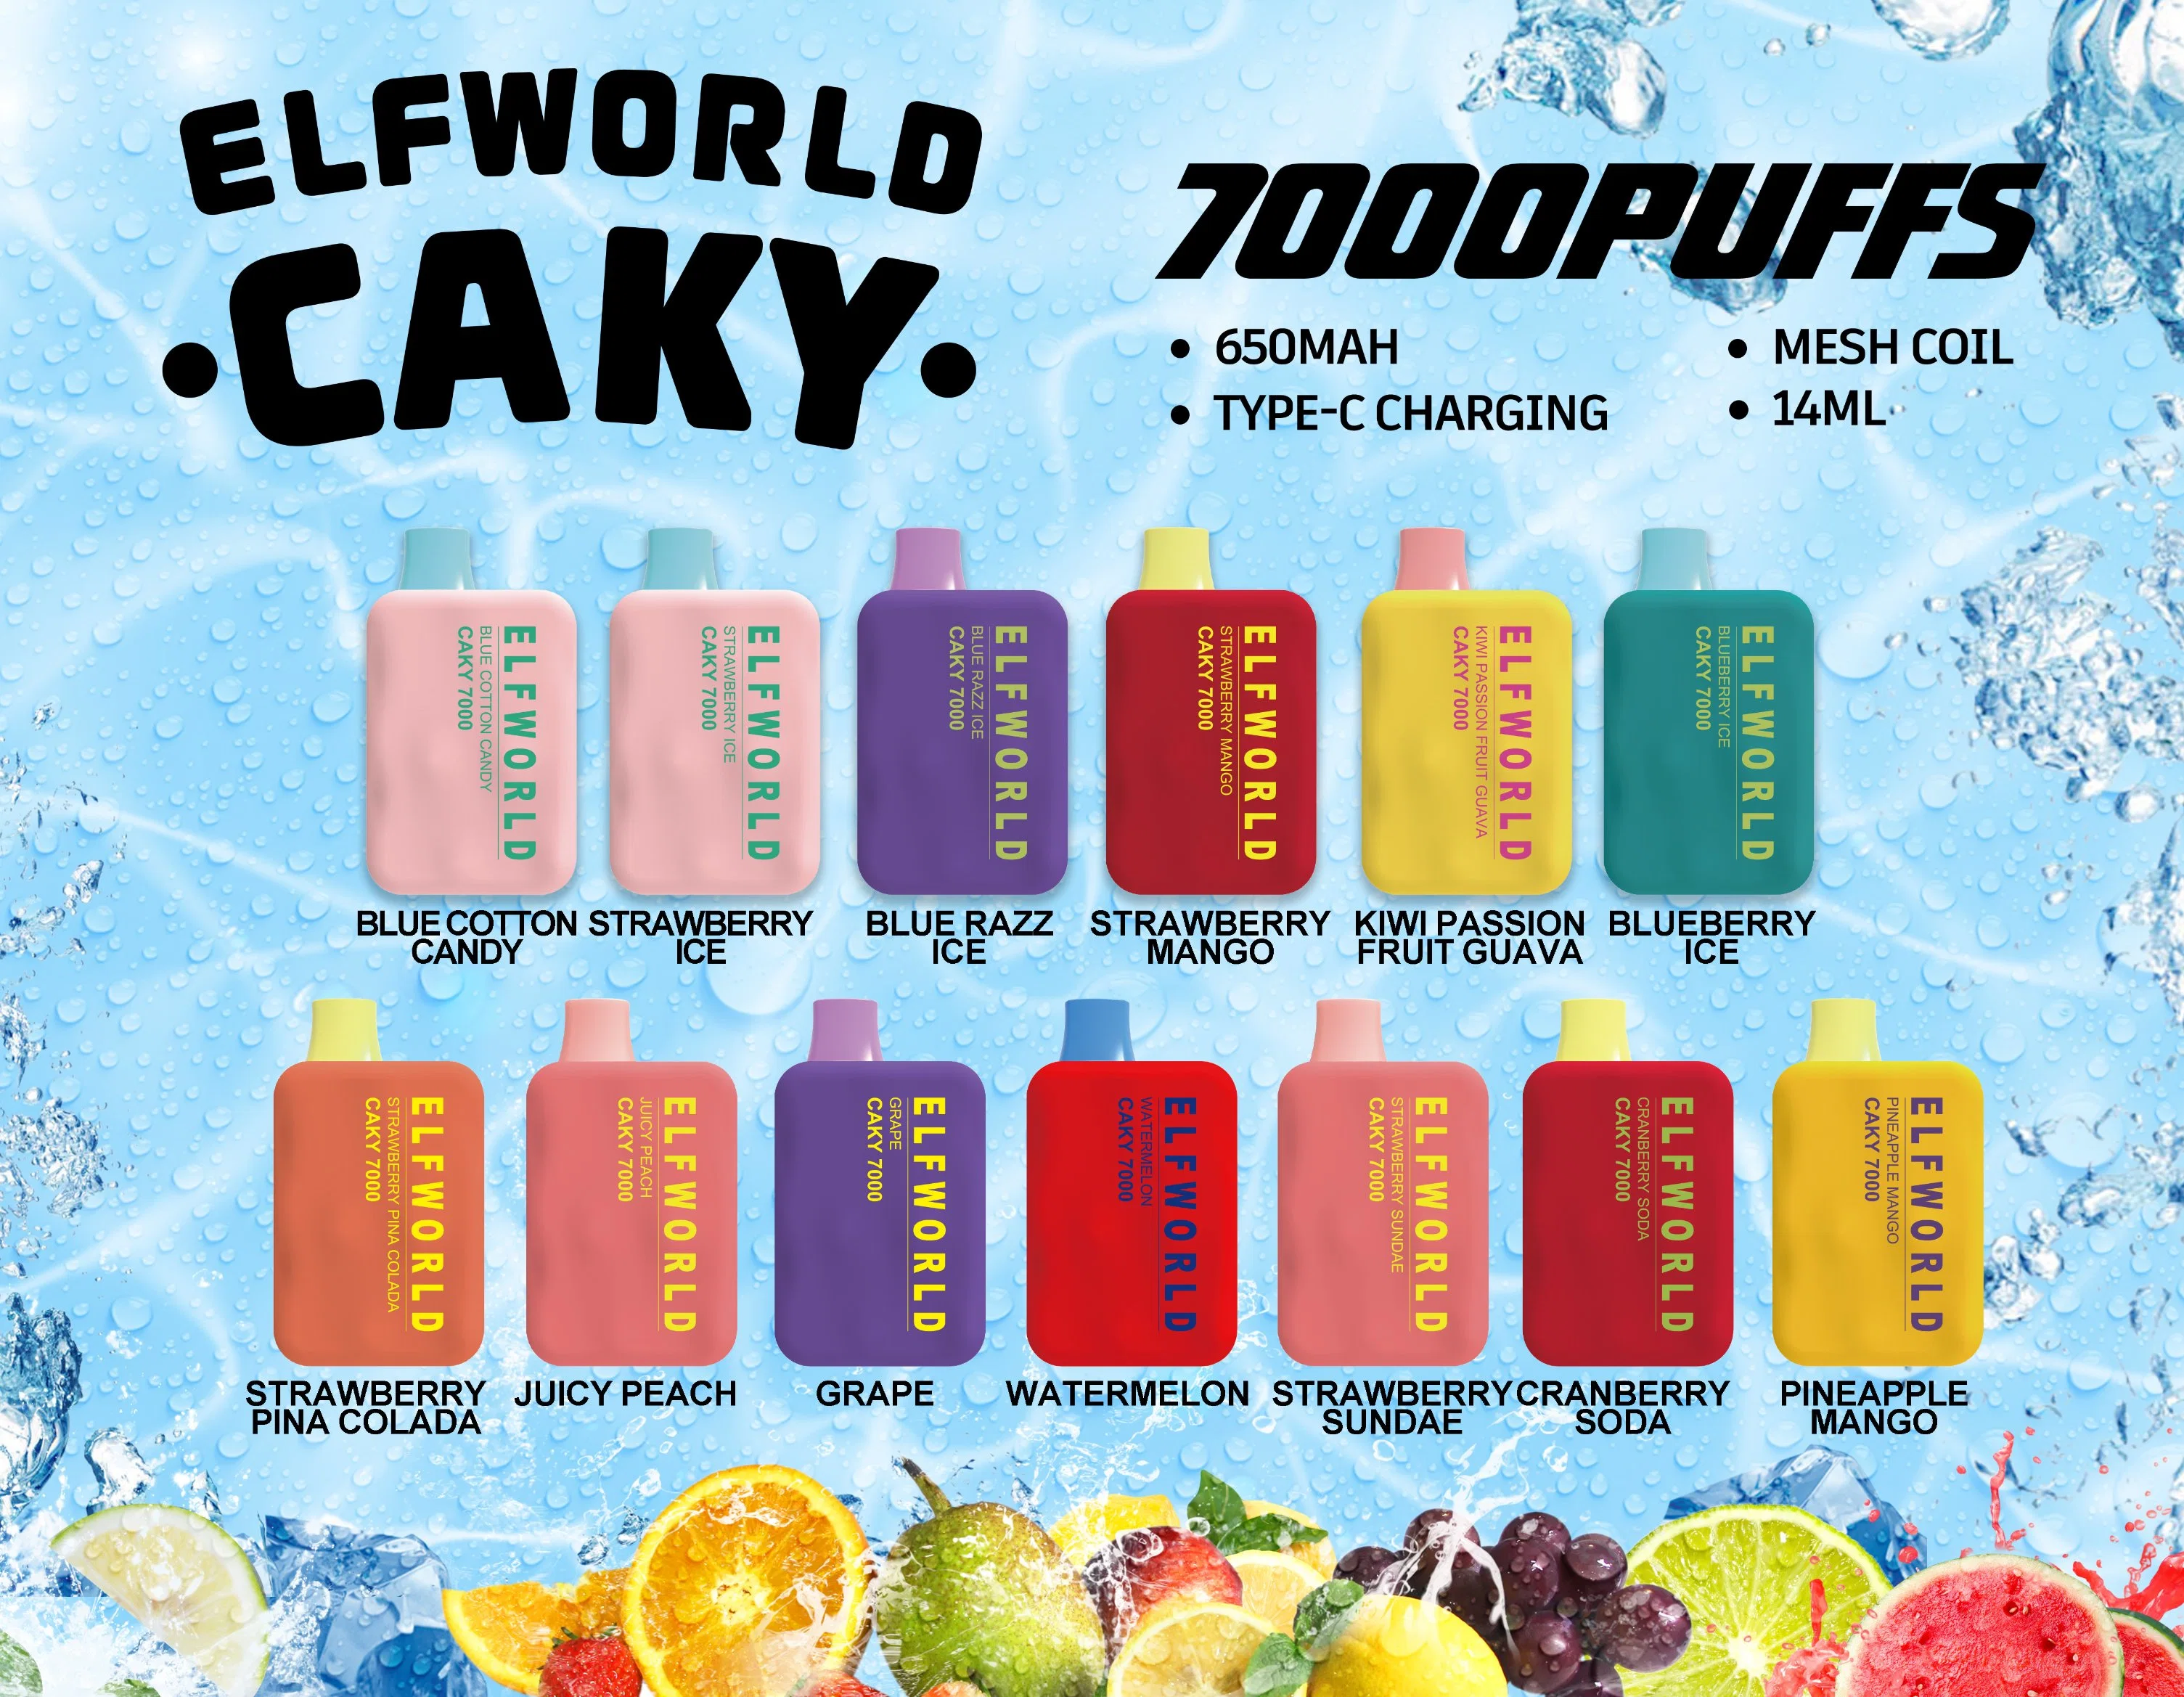 Elfworld Caky 7000 بيع سريع قابل للاستخدام في الولايات المتحدة الأمريكية